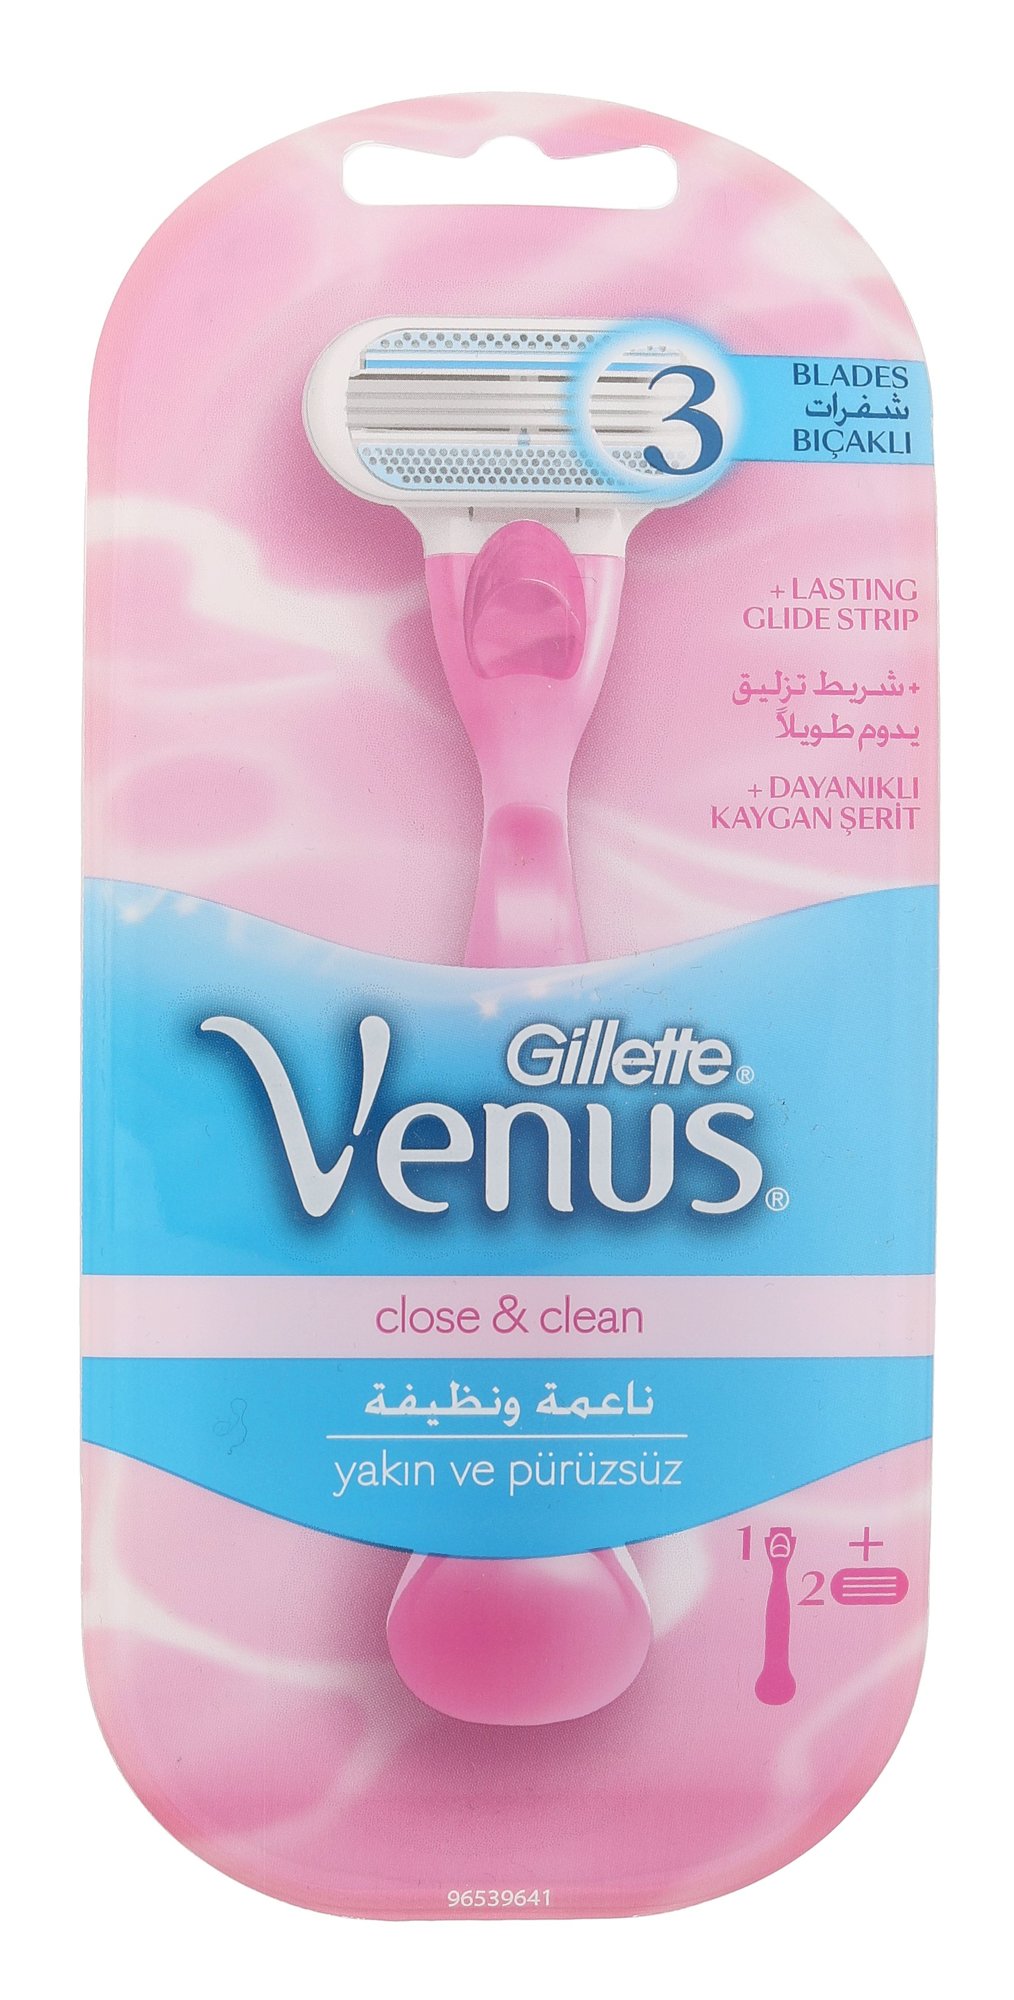 Gillette Venus Close & Clean skustuvas